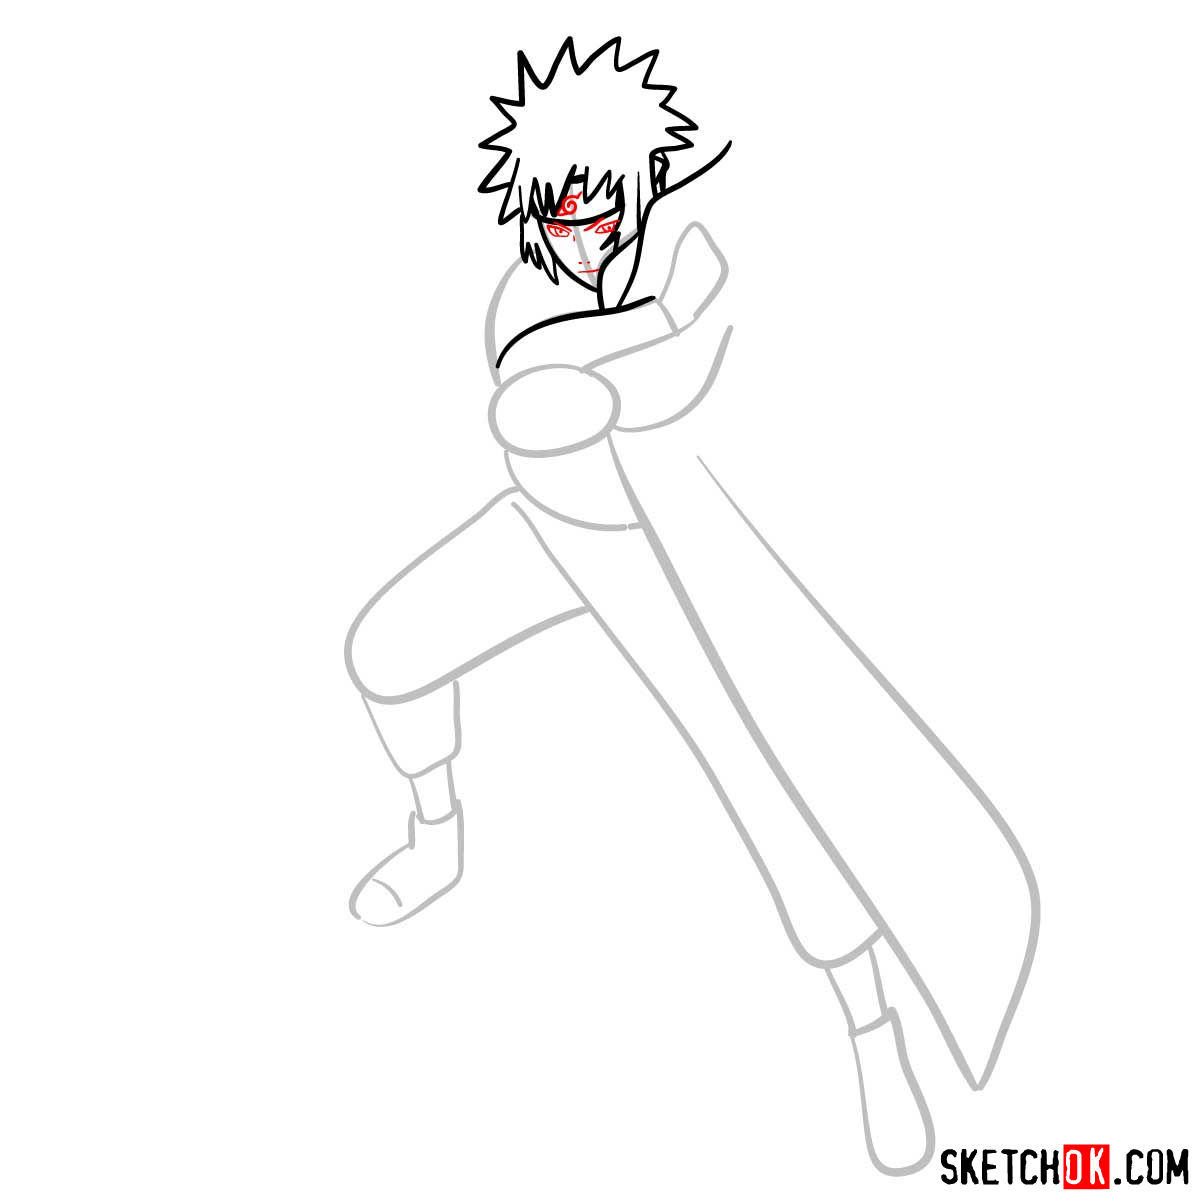 How to draw Minato Namikaze from Naruto anime - step 06